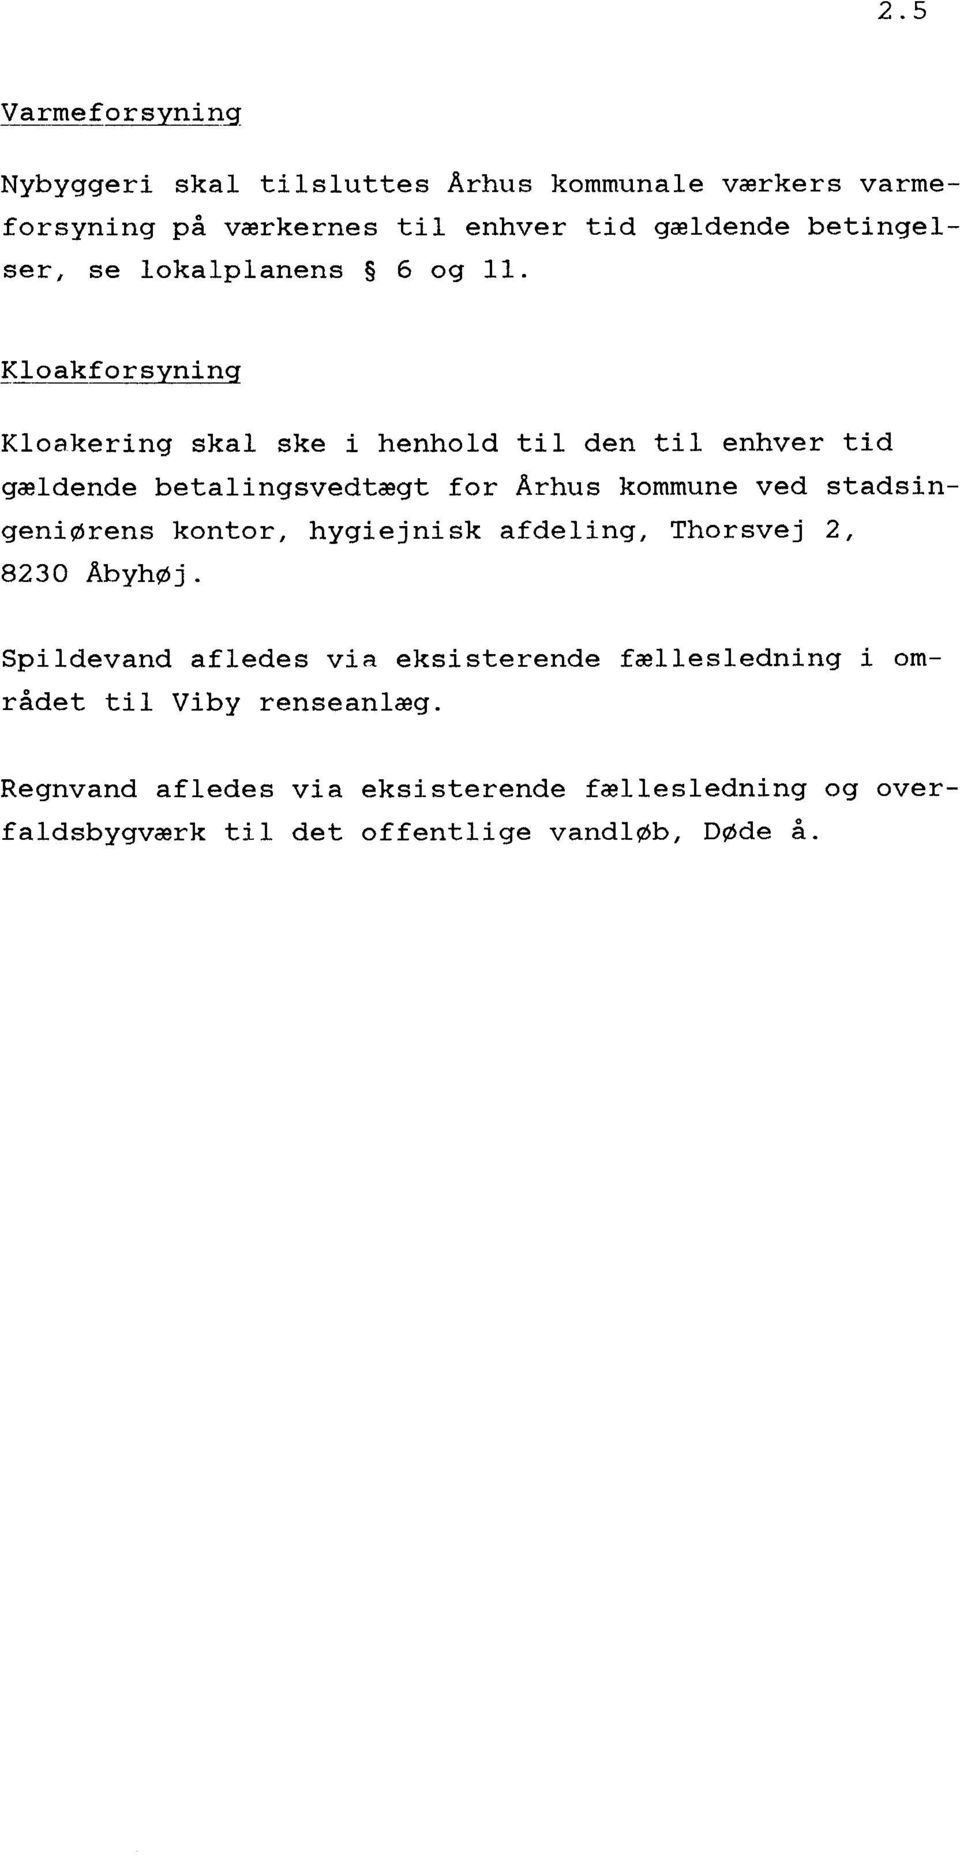 Kloakforsyninq Kloakering skal ske i henhold til den til enhver tid gældende betalingsvedtægt for Arhus kommune ved stadsingeniørens